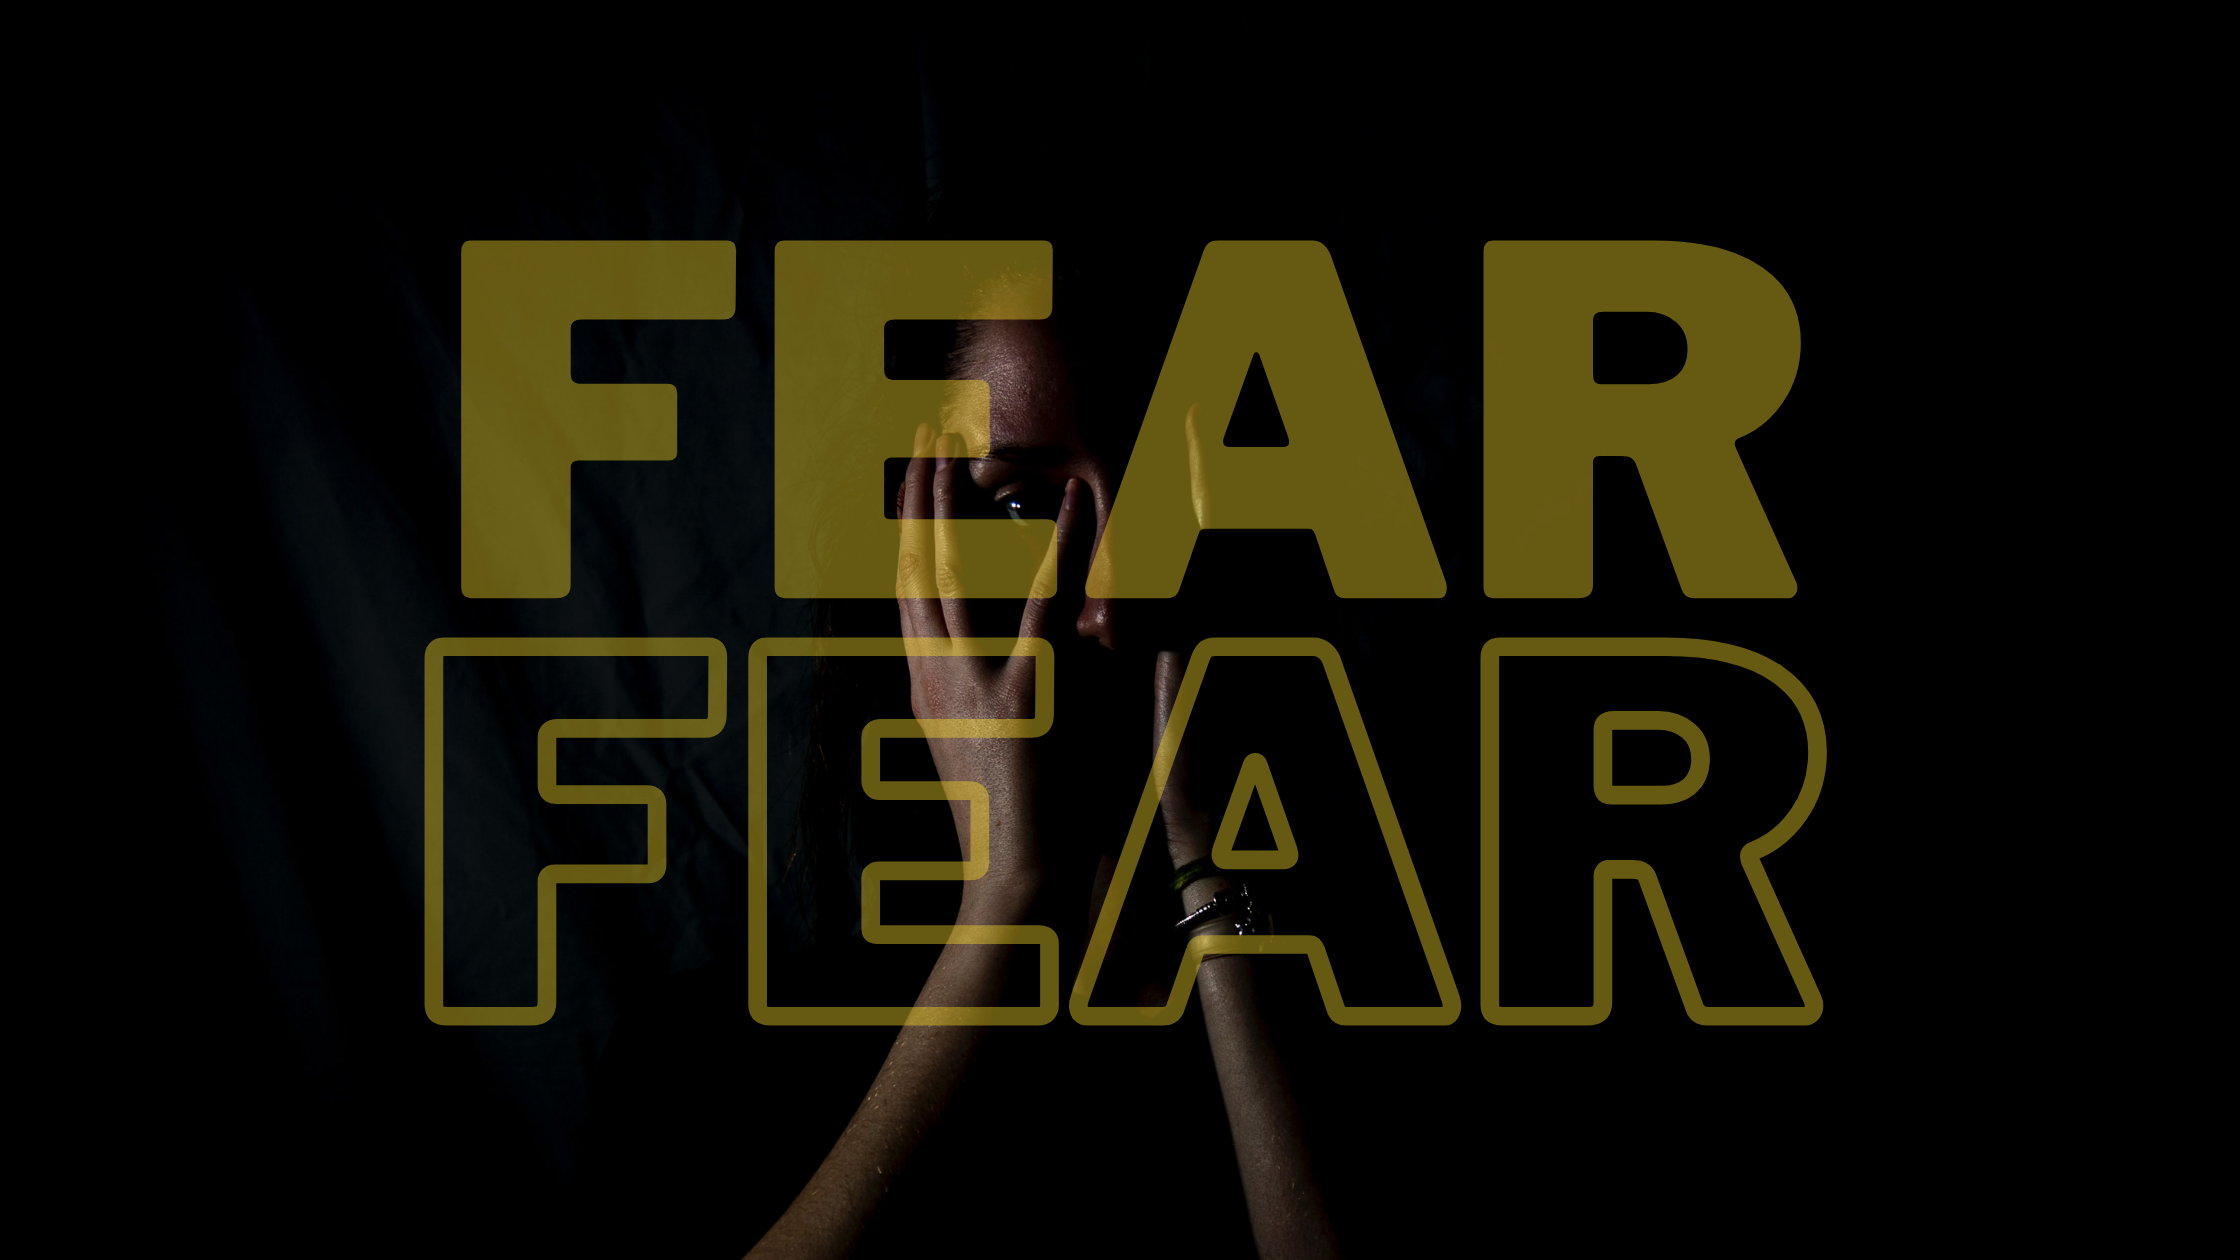 Fear-fear-2021